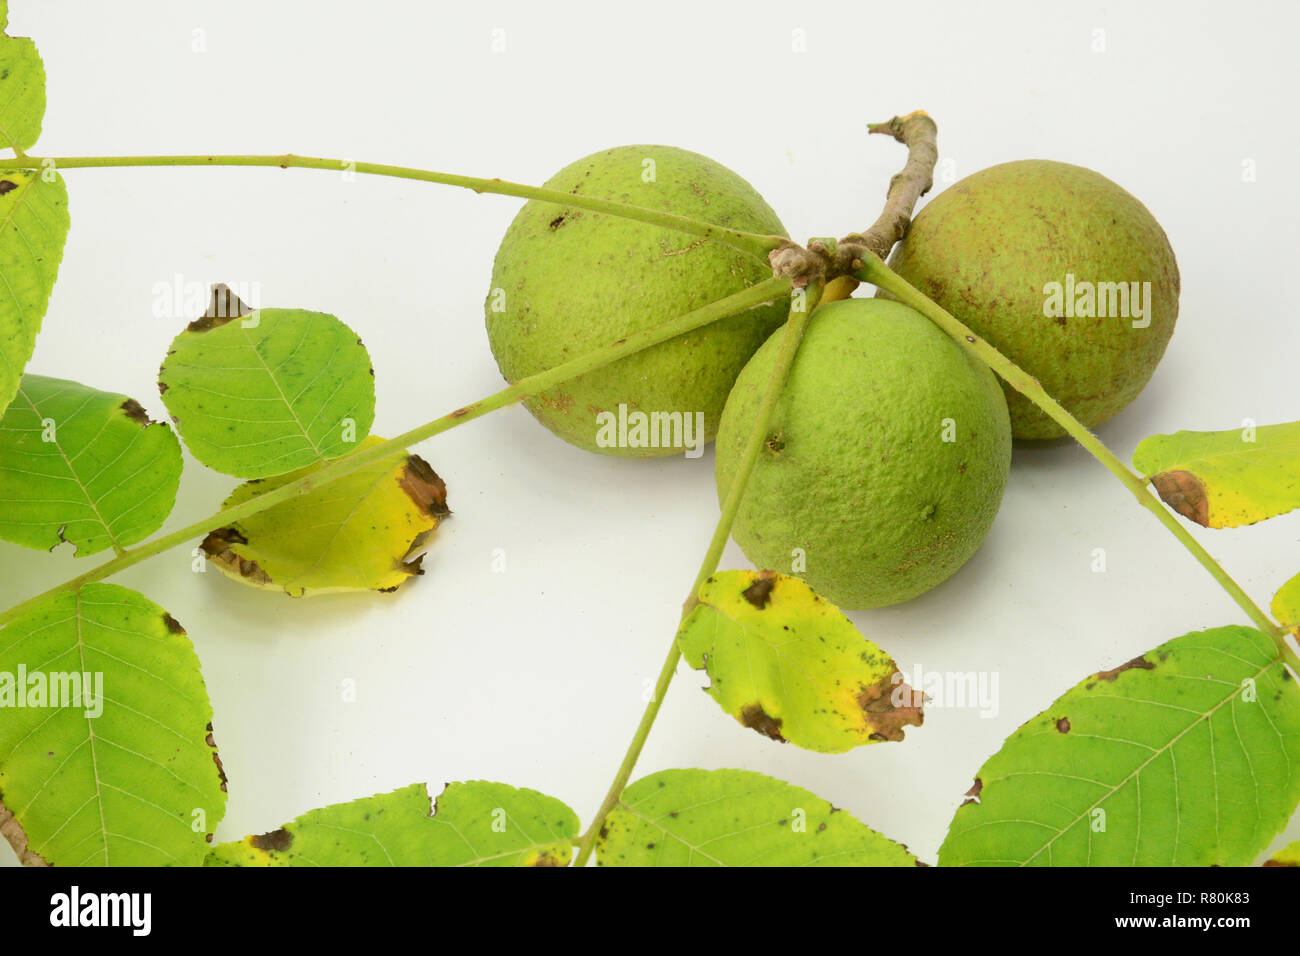 Le noyer noir, le noyer américain (Juglans nigra). Twig avec fruit non mûr et de feuilles, studio photo sur un fond blanc. Banque D'Images